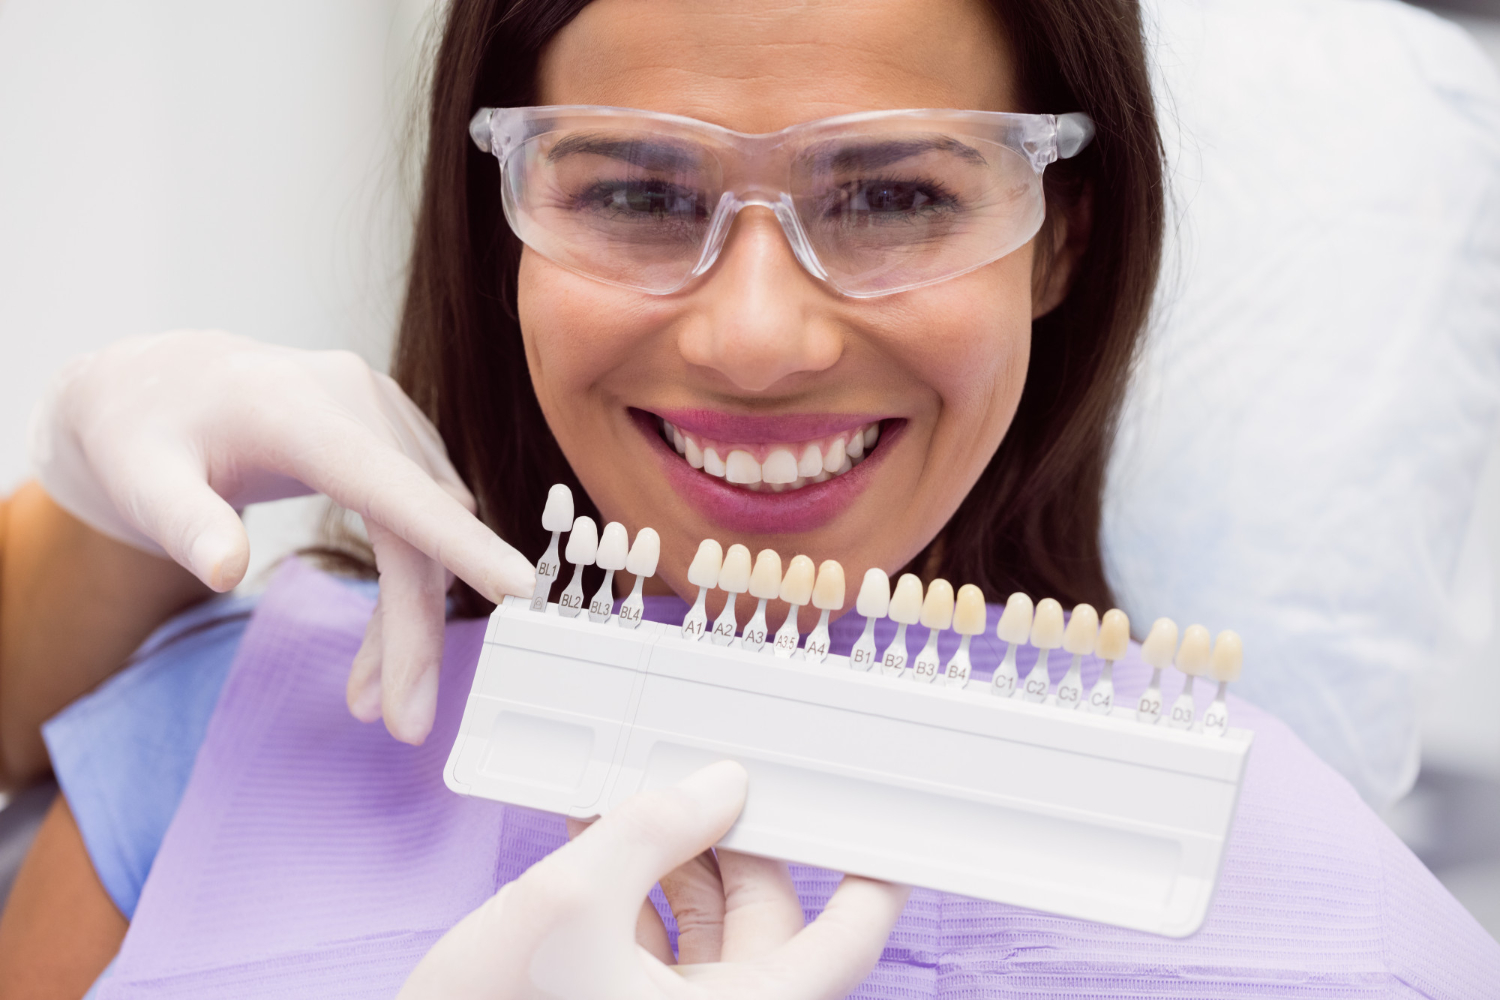 Răng sứ Emax là một trong những sản phẩm phục hình răng cao cấp phổ biến